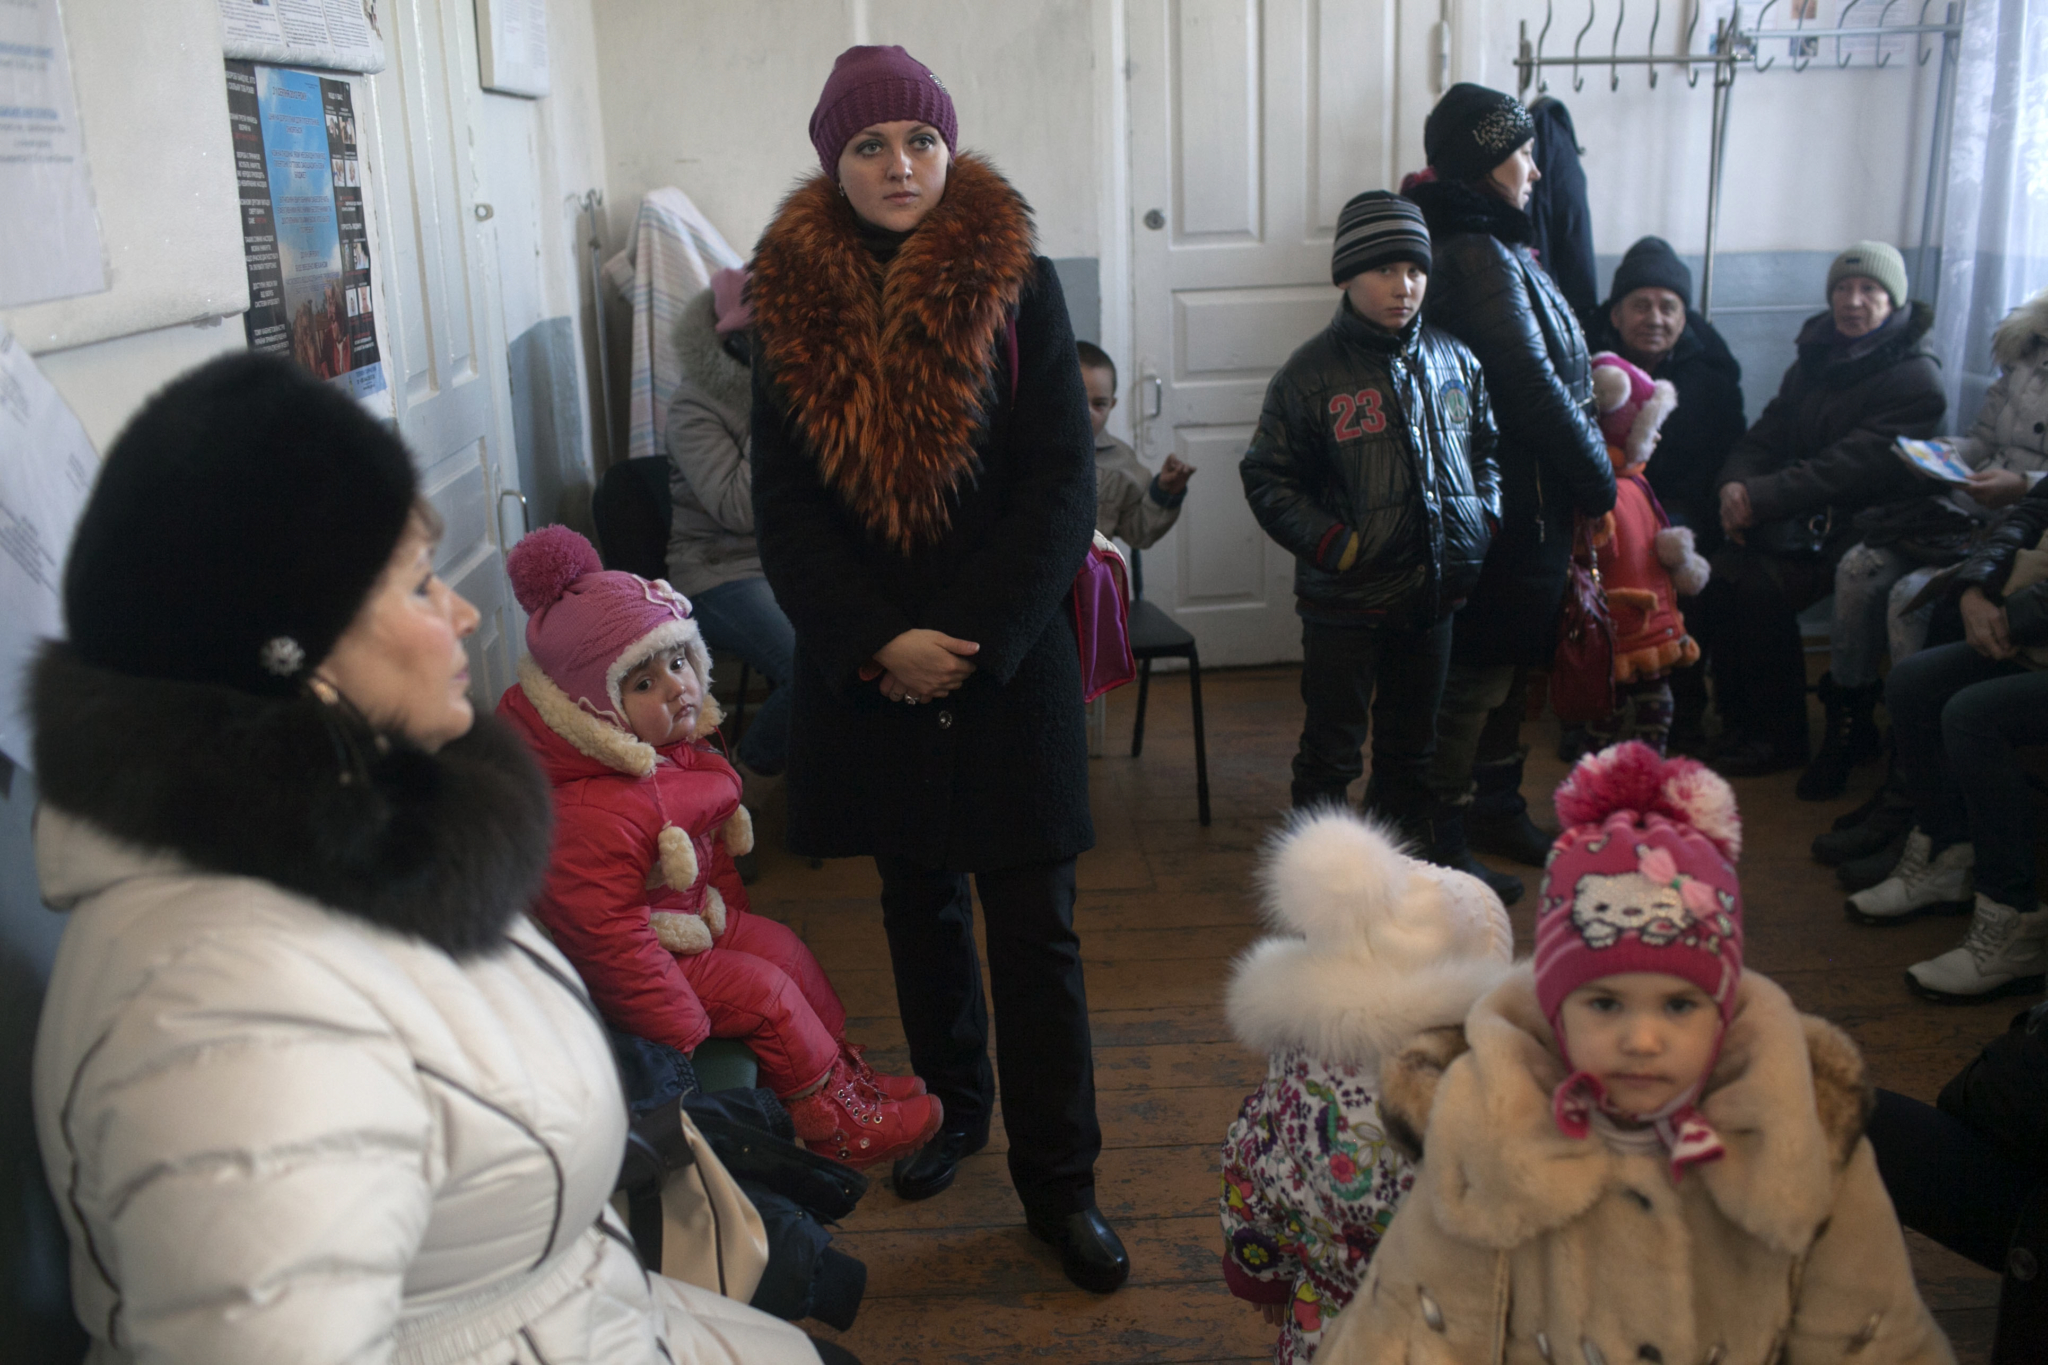 Pessoas lotam uma sala de espera na clínica móvel de MSF em Kuteynikovo. O médico do vilarejo foi transferido para outra cidade quando o conflito teve início e a comunidade está sem um médico regular há meses.